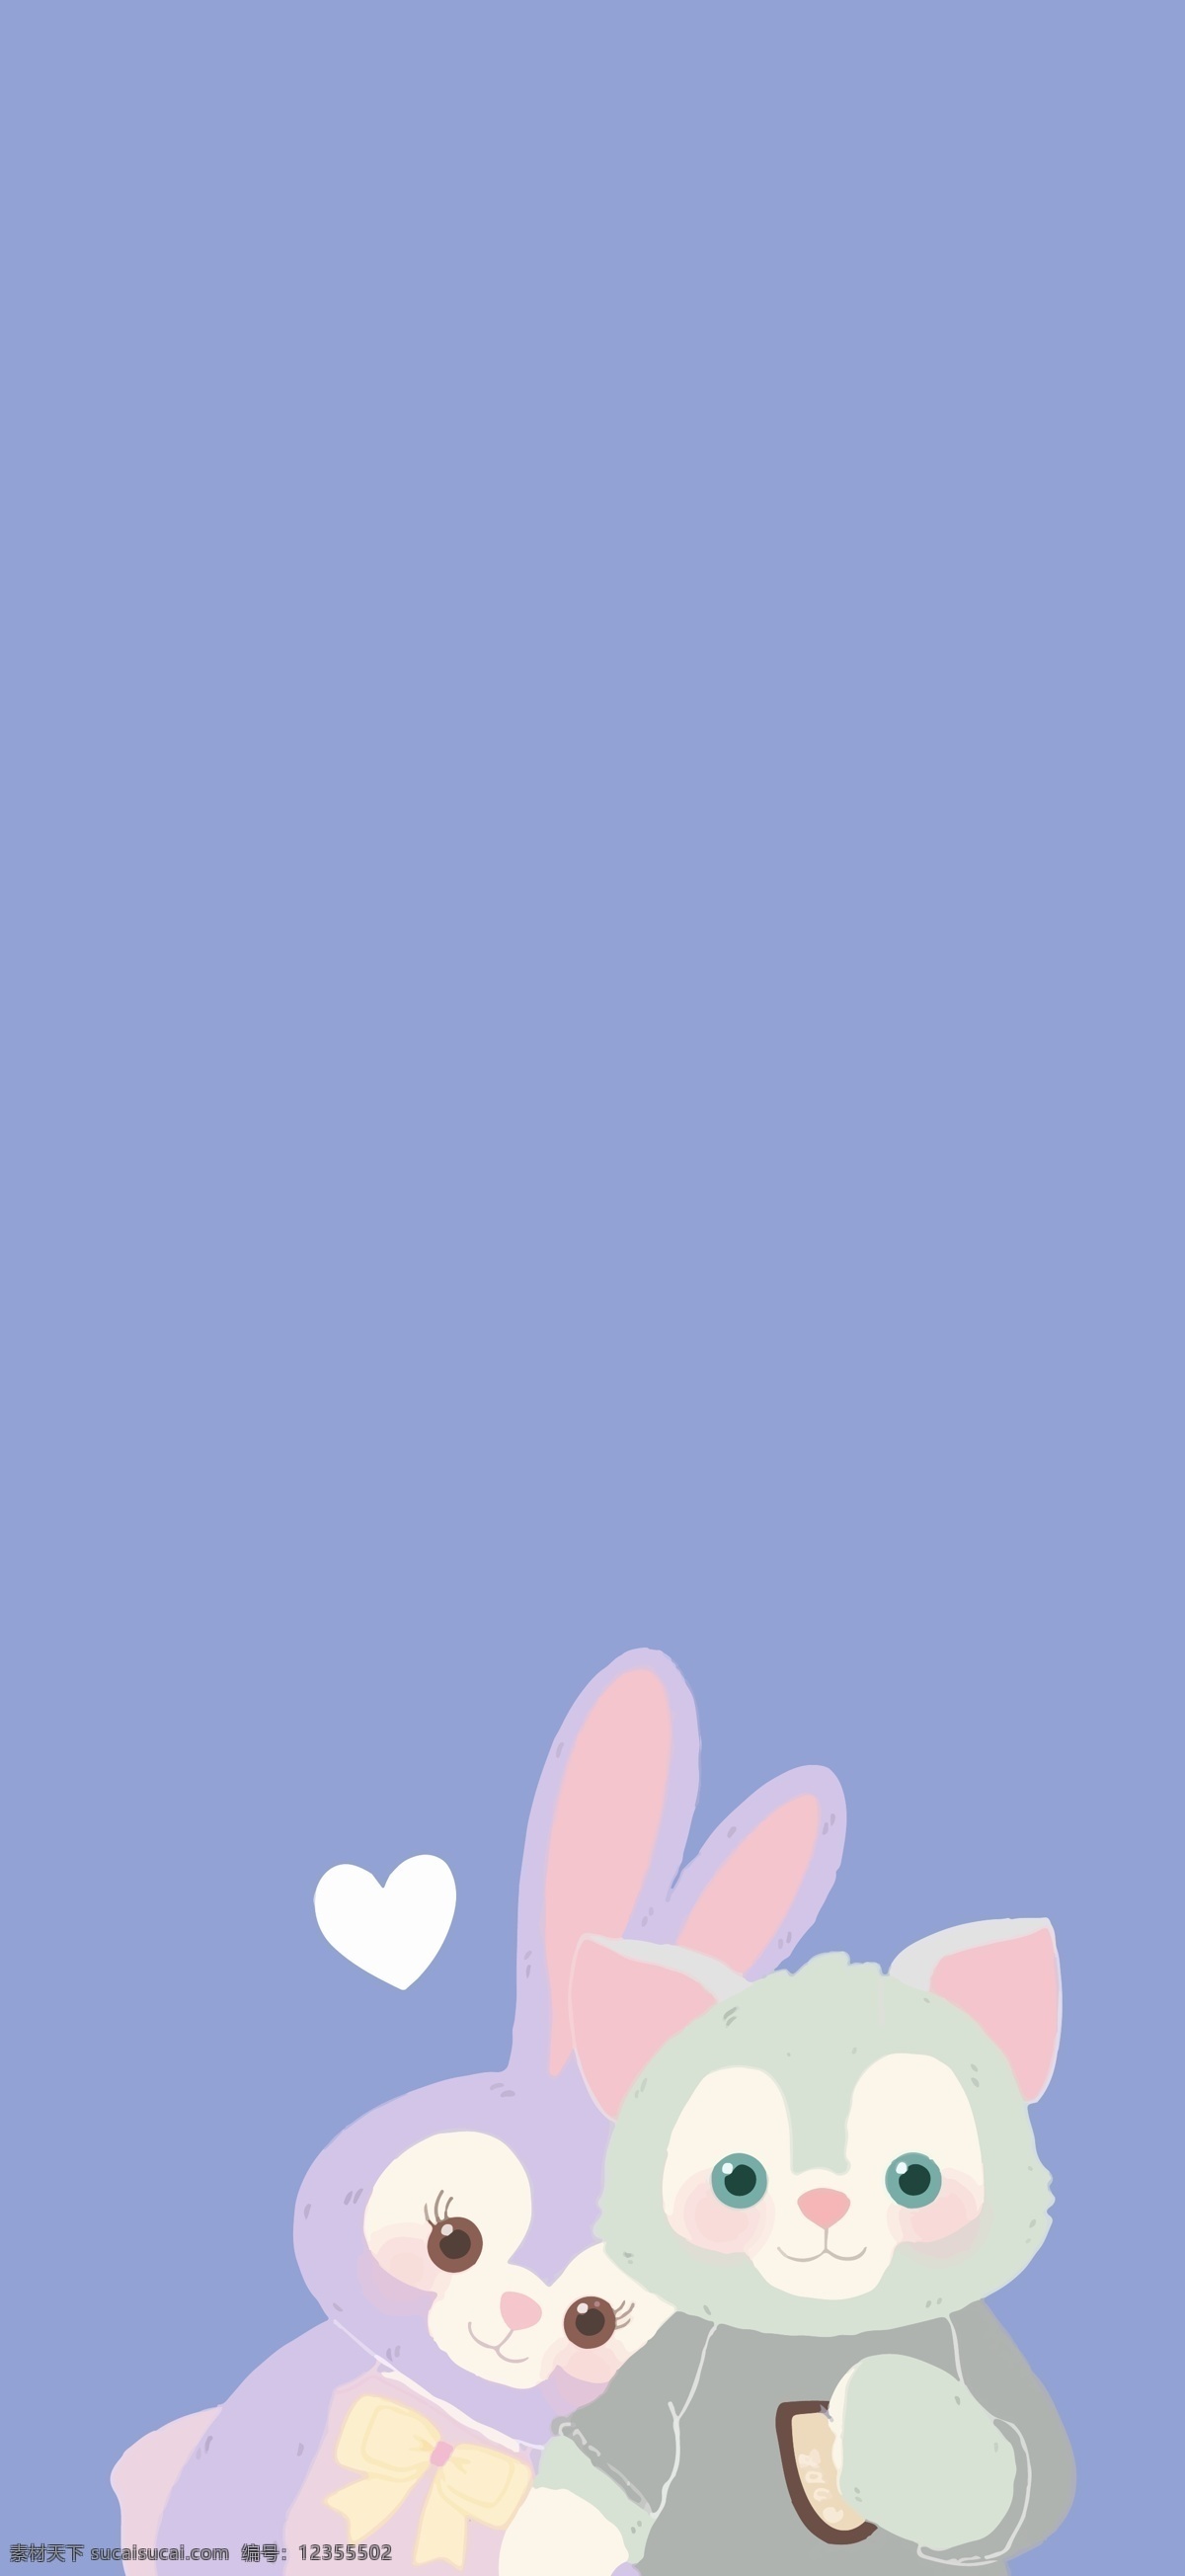 迪士尼 星 戴 露 杰拉 托尼 达菲的朋友 星戴露 杰拉托尼 紫色兔子 绿色猫 动漫动画 动漫人物